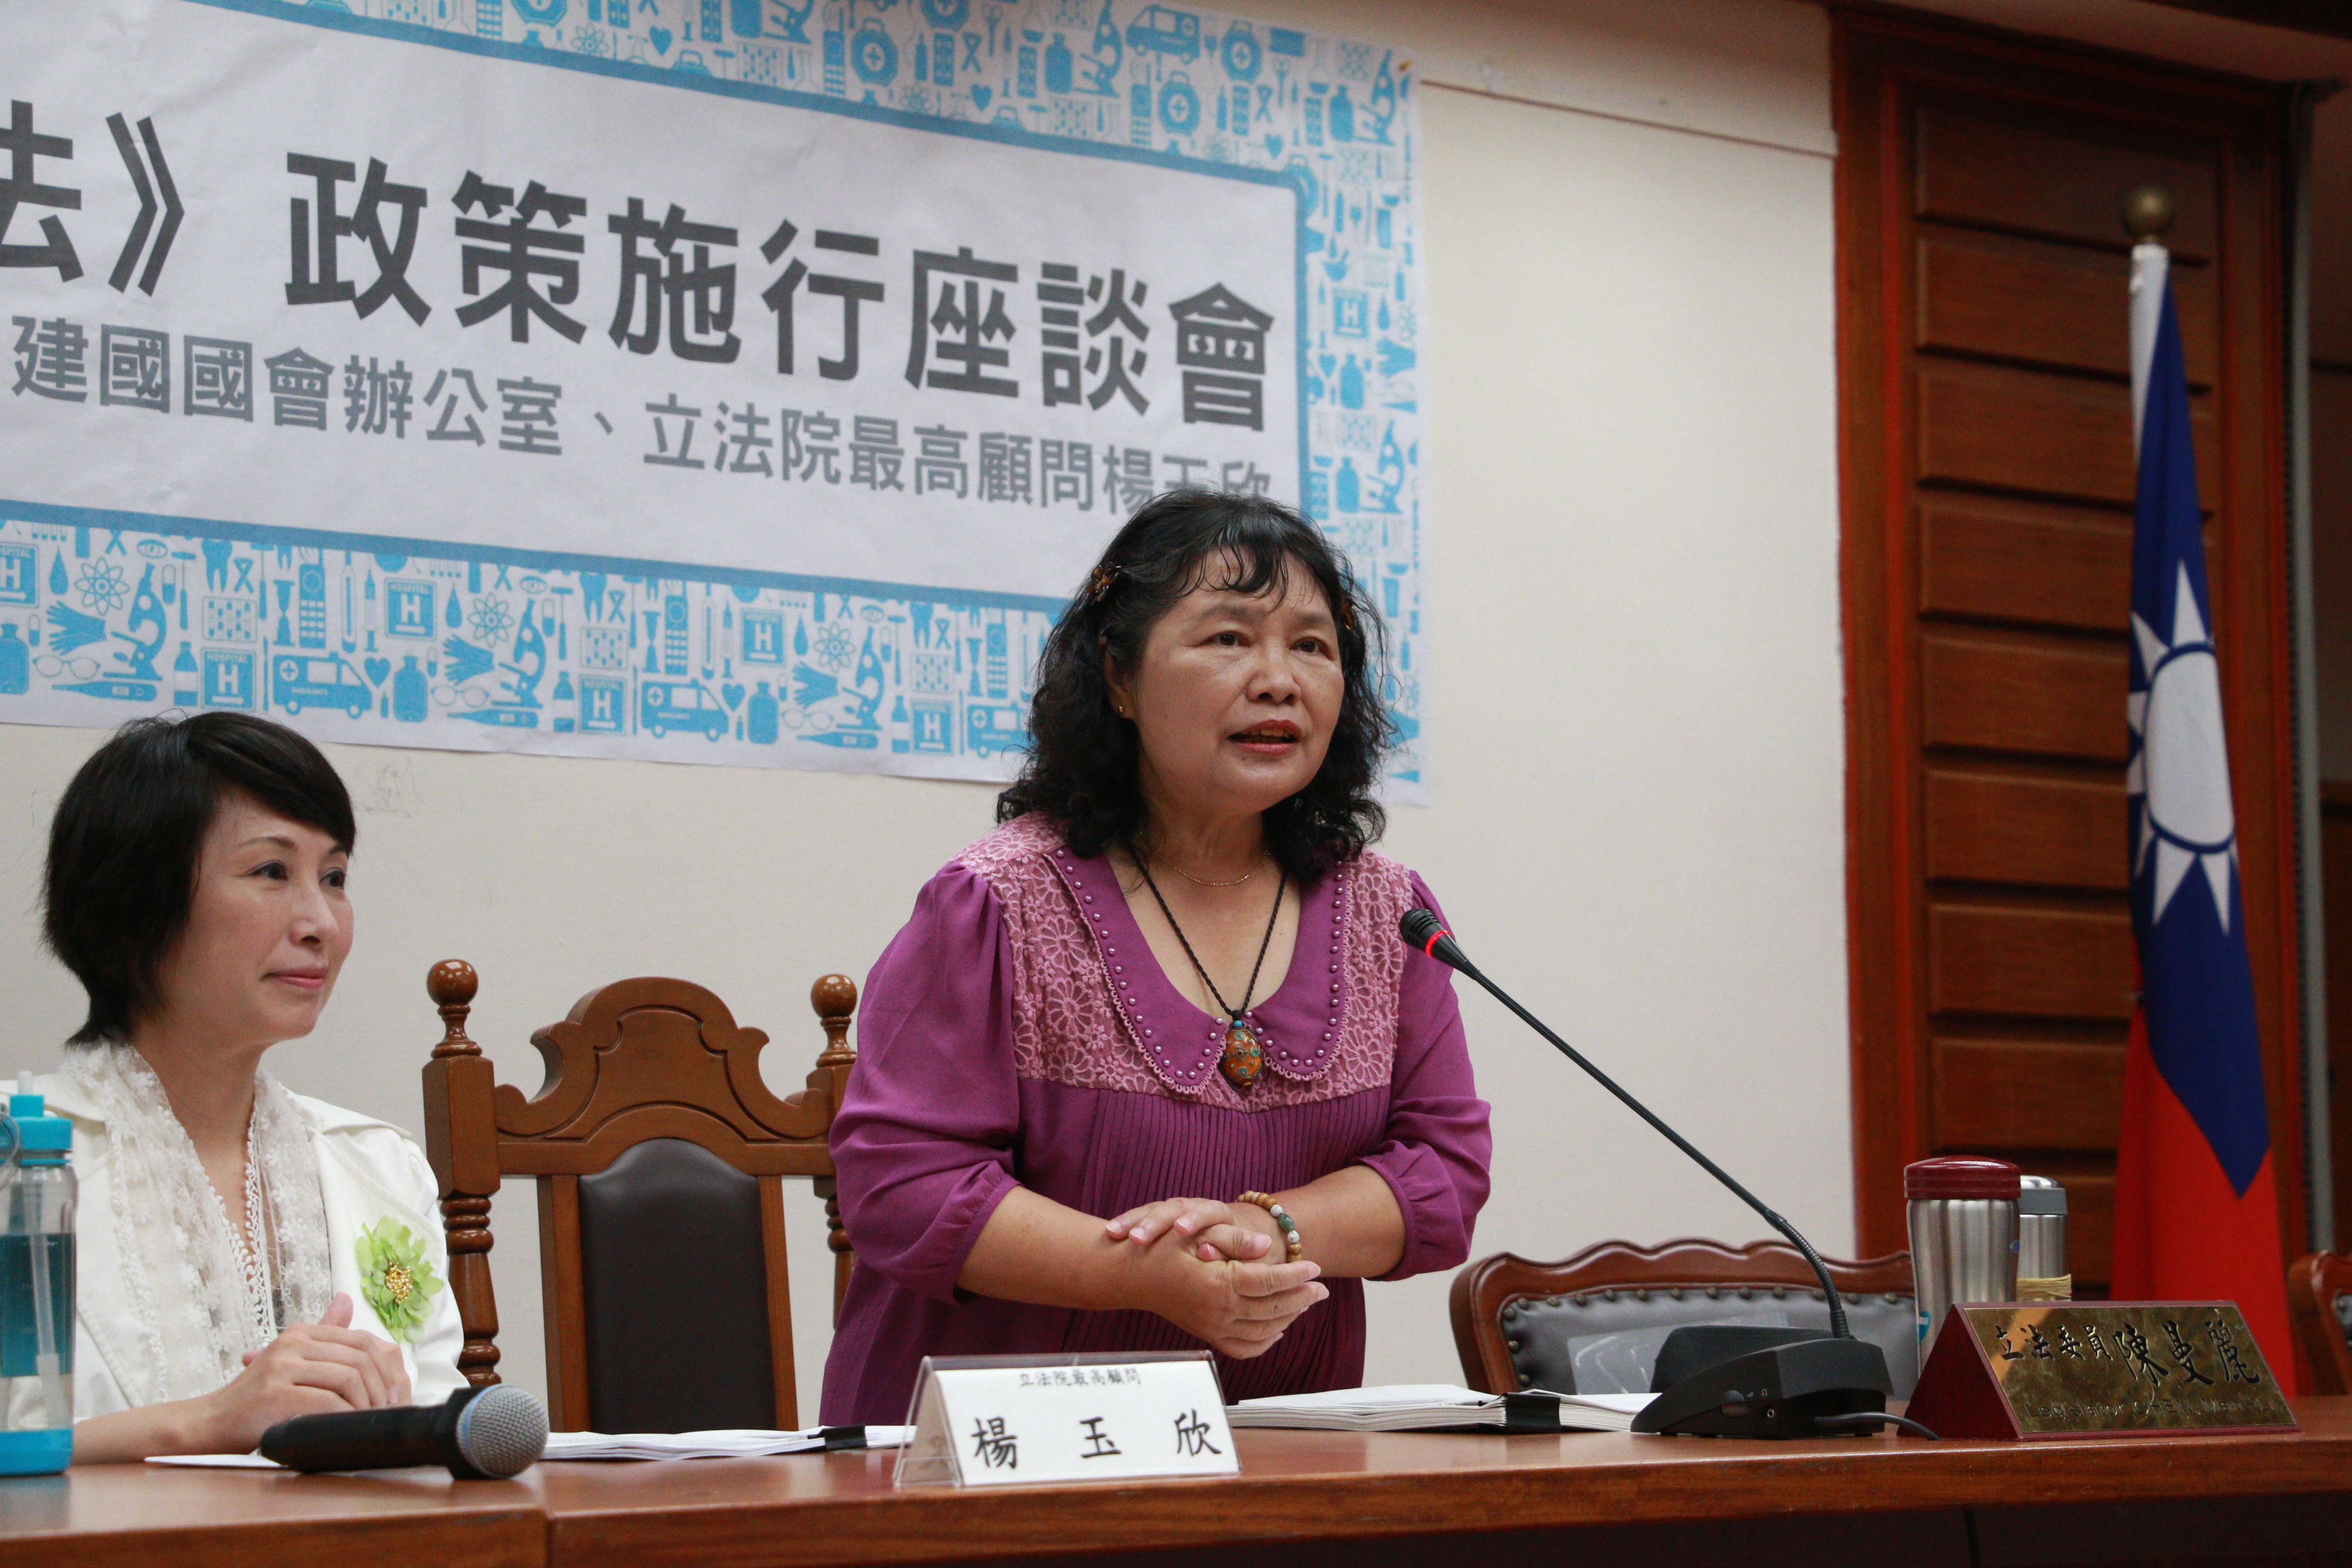 《病人自主權利法》政策施行座談會 陳曼麗委員發言